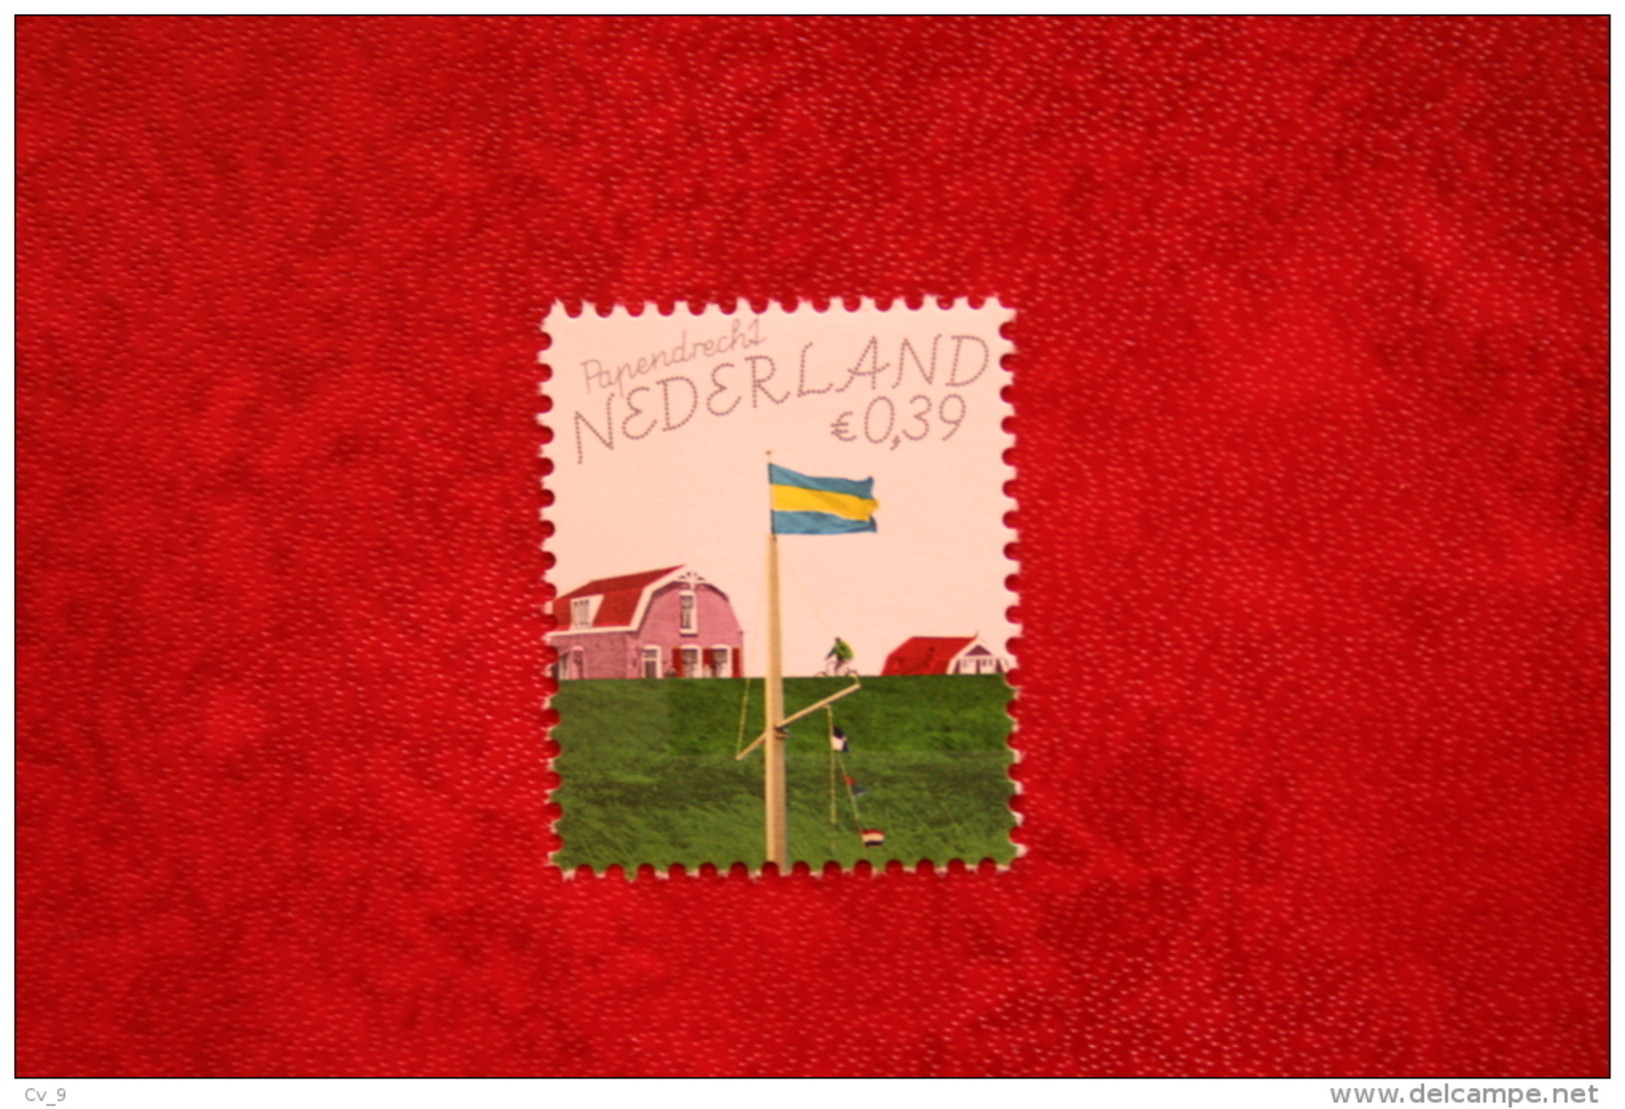 Mooi Nederland Papendrecht ; NVPH 2363 (Mi 2337) ; 2005 POSTFRIS / MNH ** NEDERLAND / NIEDERLANDE / NETHERLANDS - Unused Stamps